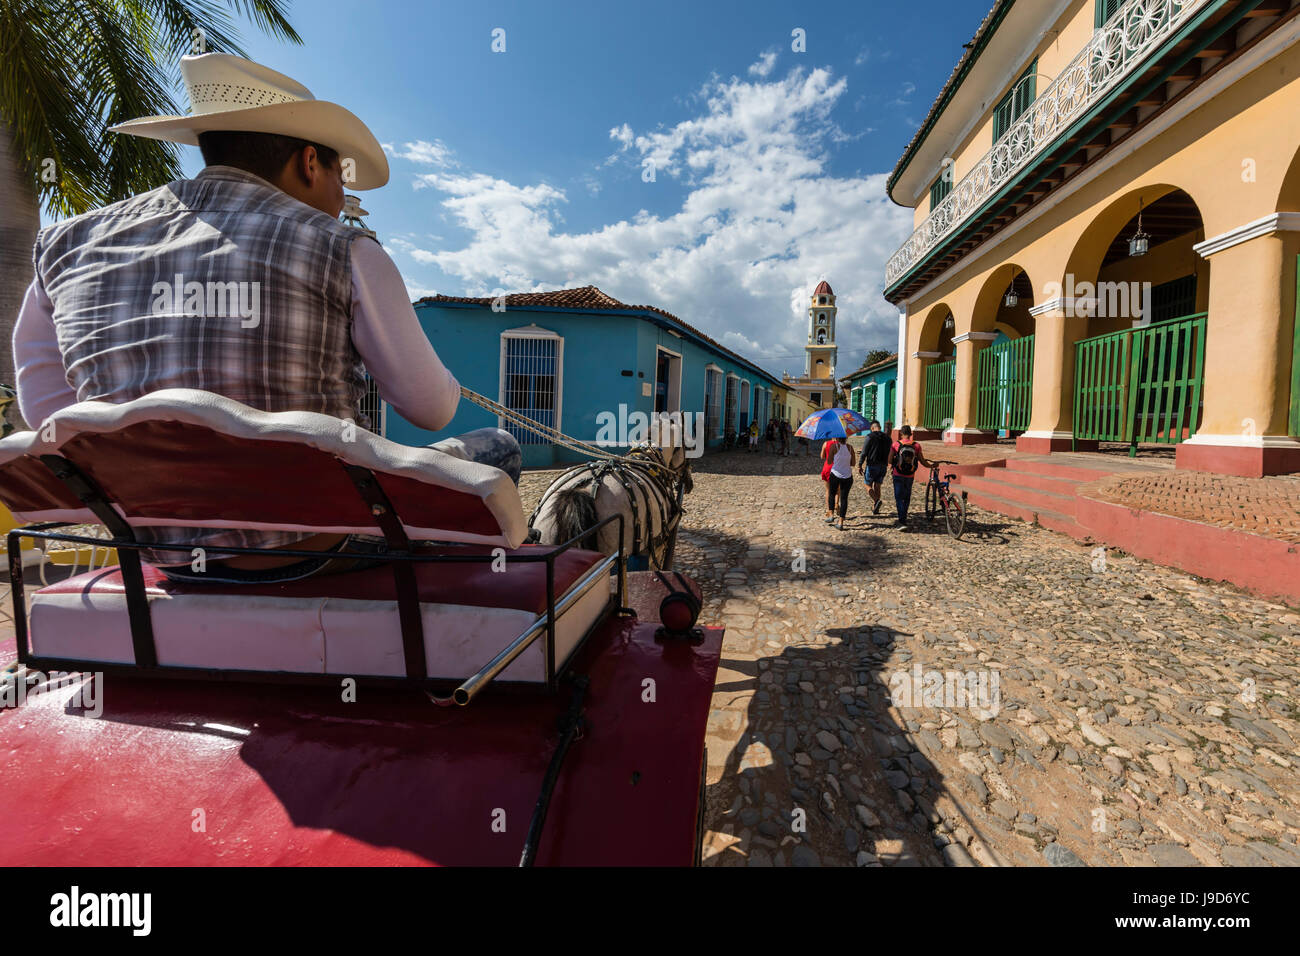 Una carrozza trainata da cavalli noto localmente come un coche in Plaza Mayor, Trinidad, Sito Patrimonio Mondiale dell'UNESCO, Cuba, West Indies, dei Caraibi Foto Stock